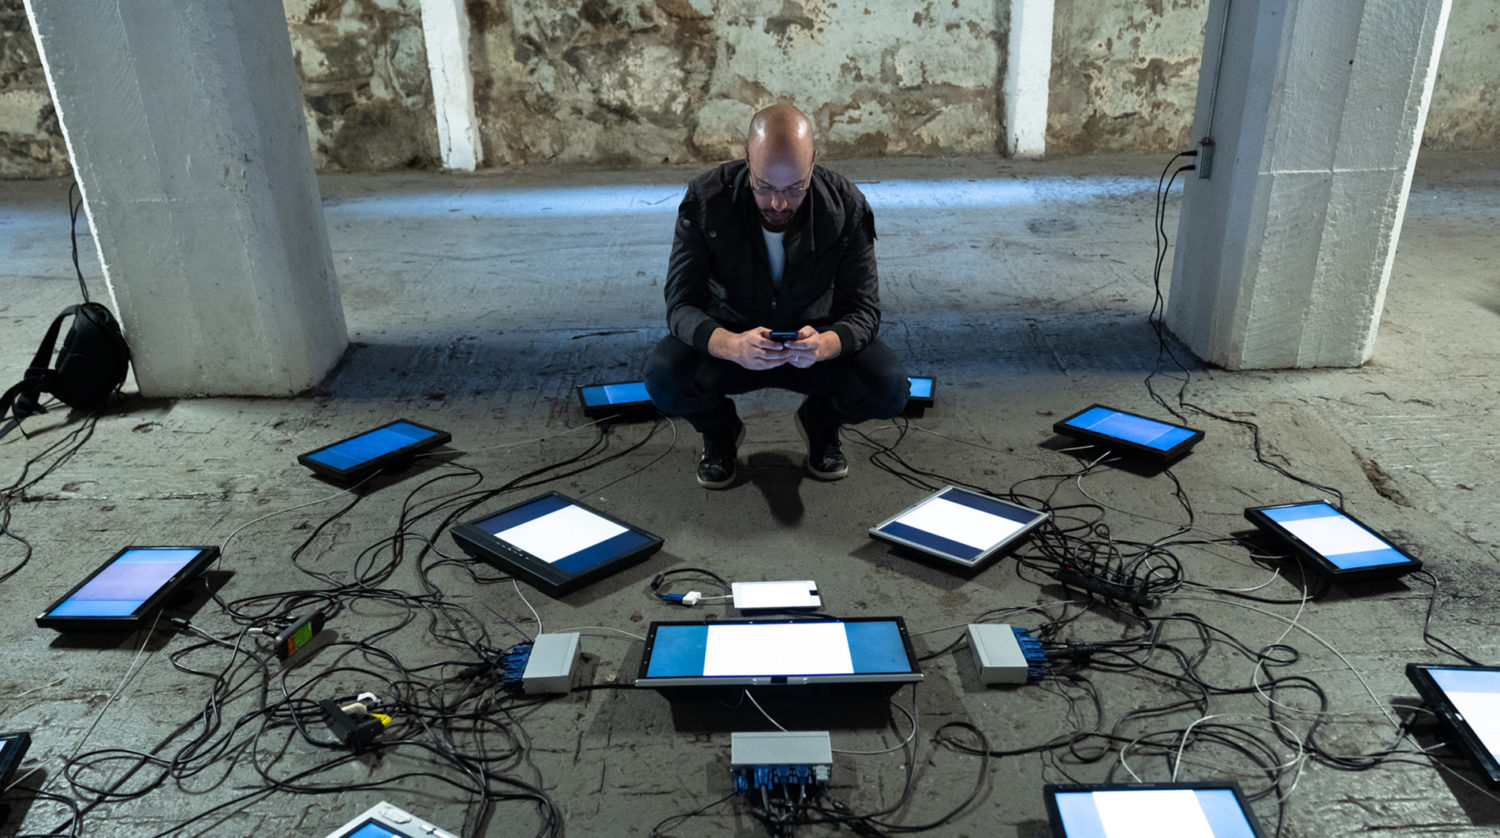 Giuliano Lamberti Obici tritt diese Woche beim "Dystopie Festival" auf. Foto: Tsonami